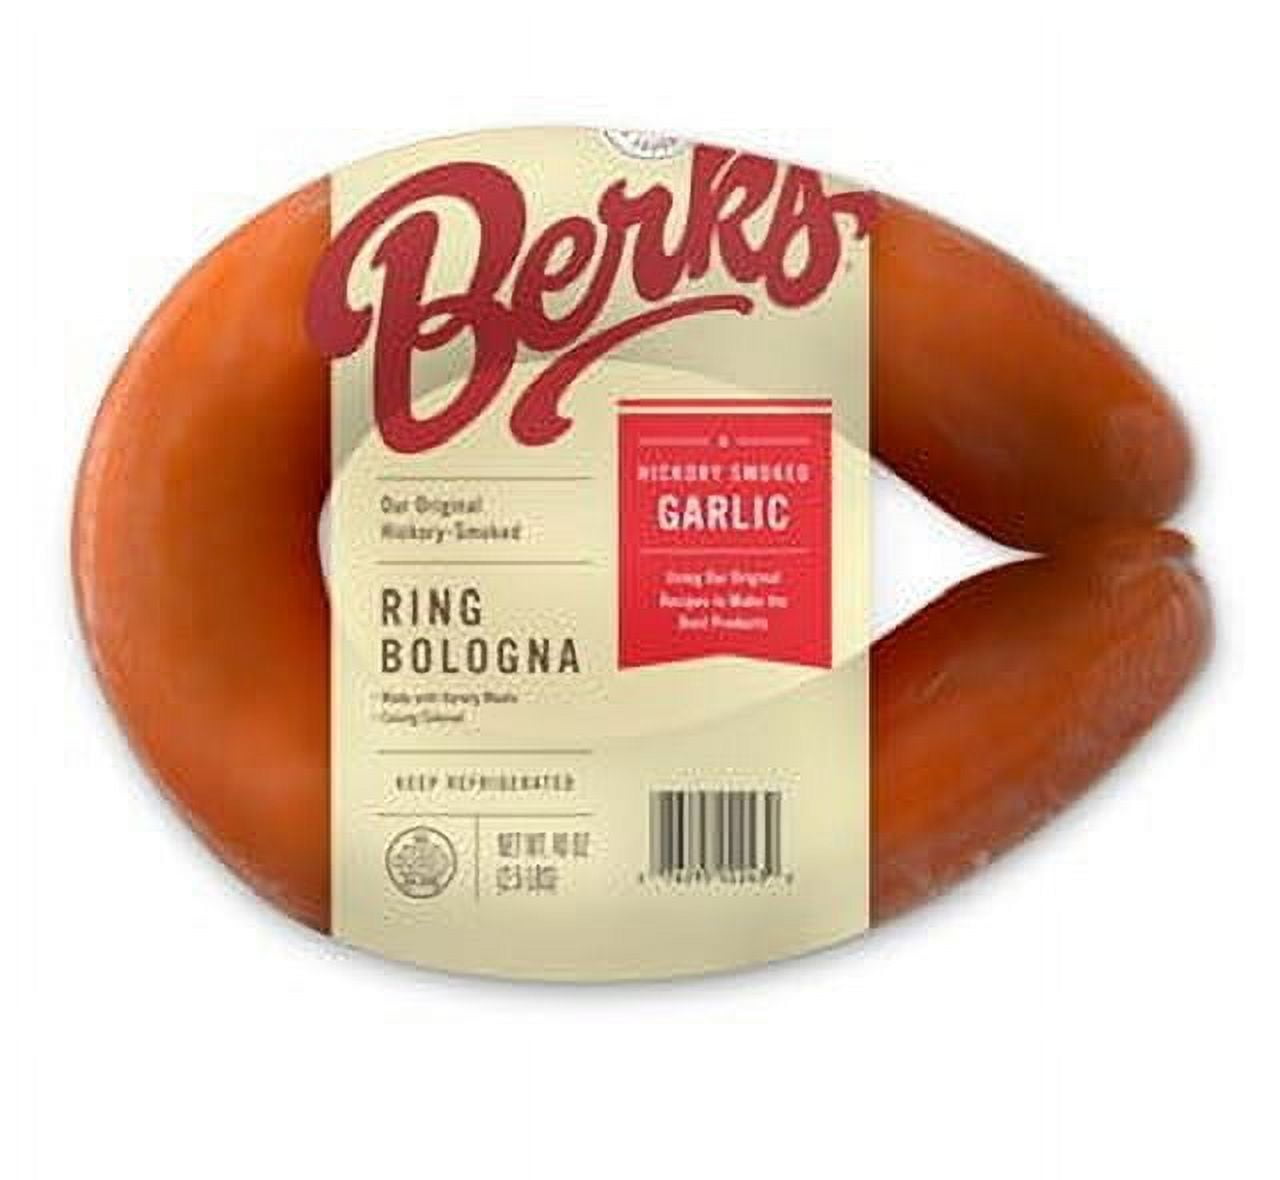 Jumbo Ring Bologna - Smoked Sausage - LeRoy Meats